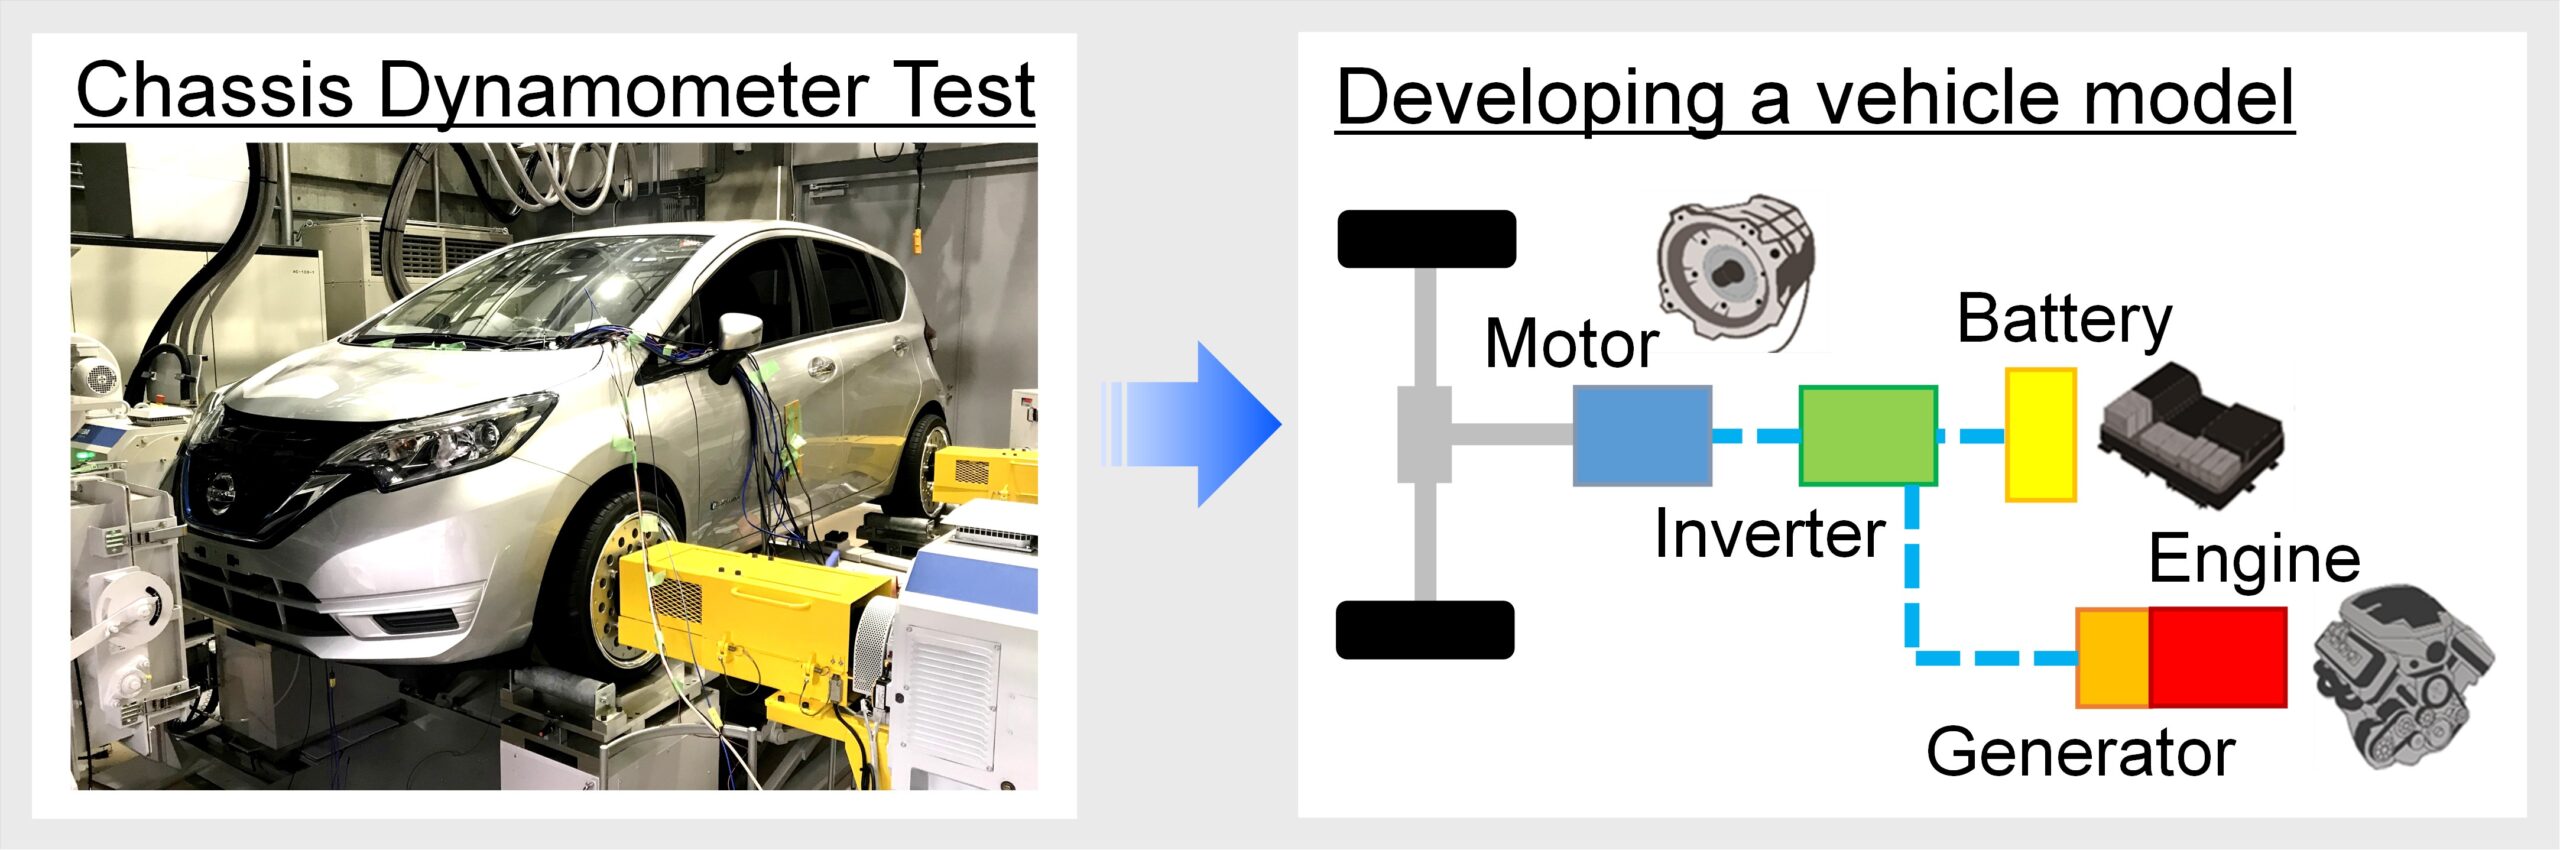 車両モデル構築の一例 　　　　　　　　　　　　　　　　　　　　　　　　　　　　　　　　　　　　　　　　　（左：シャシダイナモメータ試験の様子、右：モデル化する各種コンポーネント）